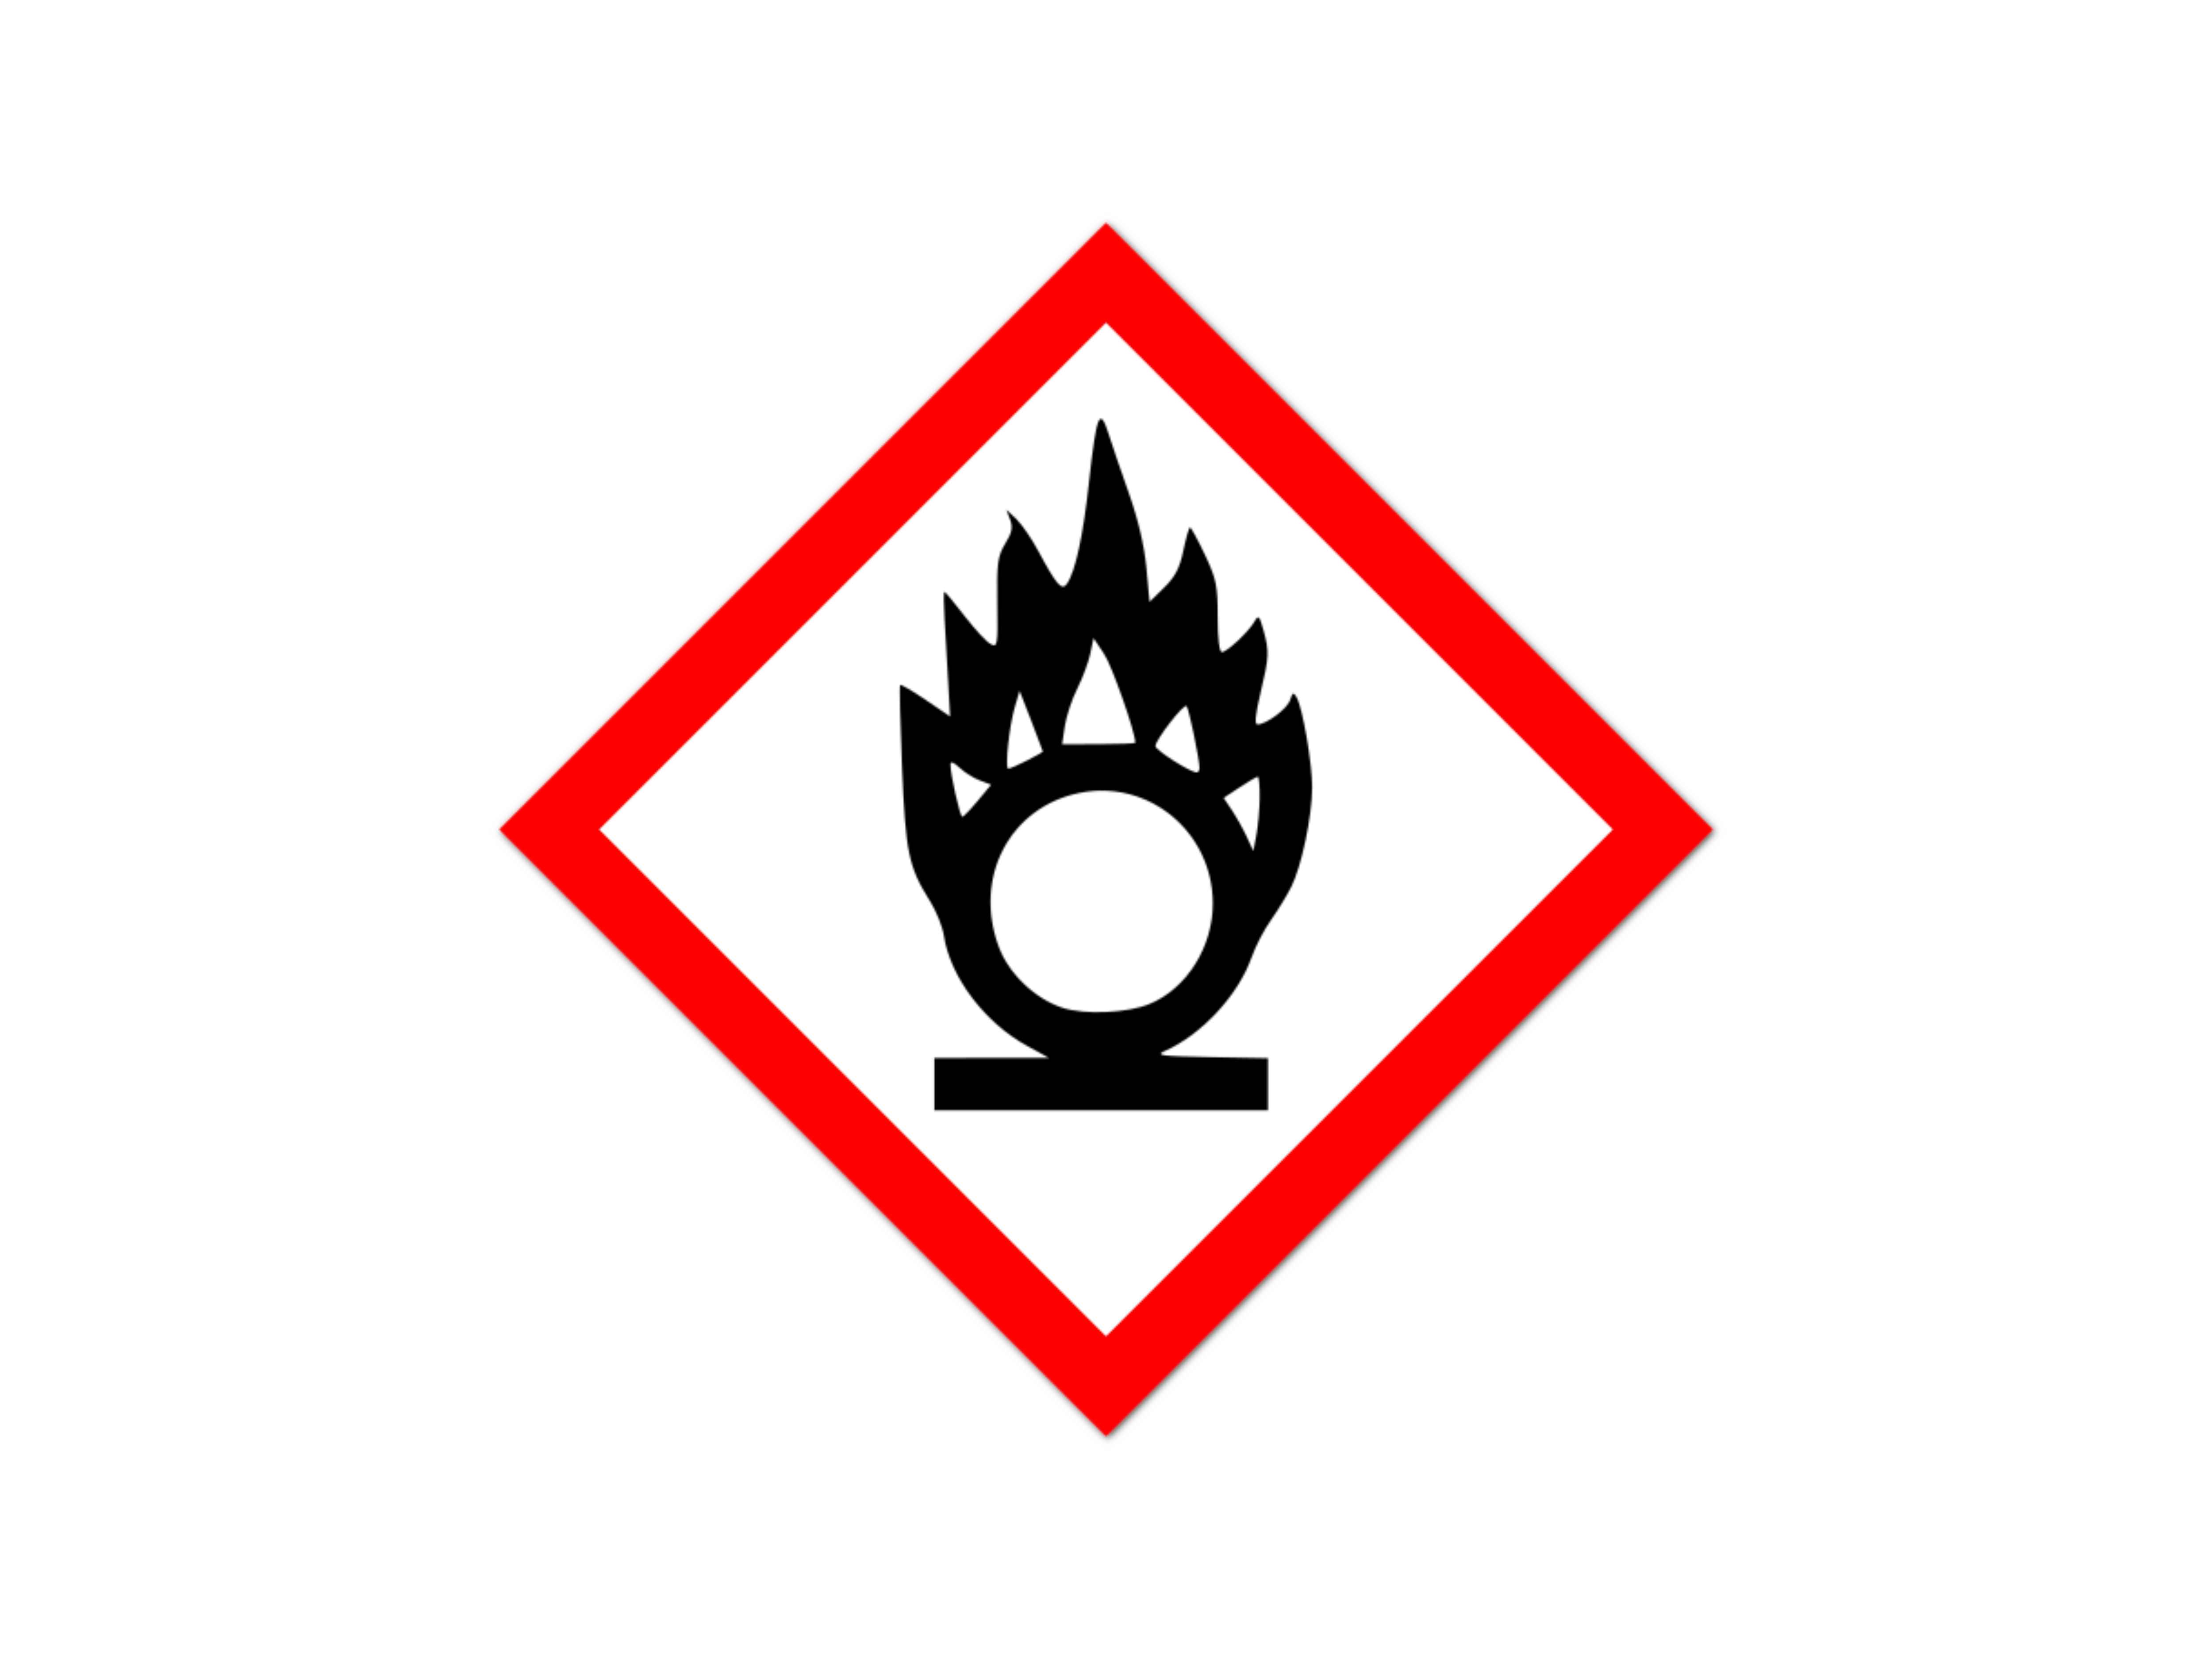    Gefahrenzeichen GHS03 - Flamme über Kreis à 10 stk.